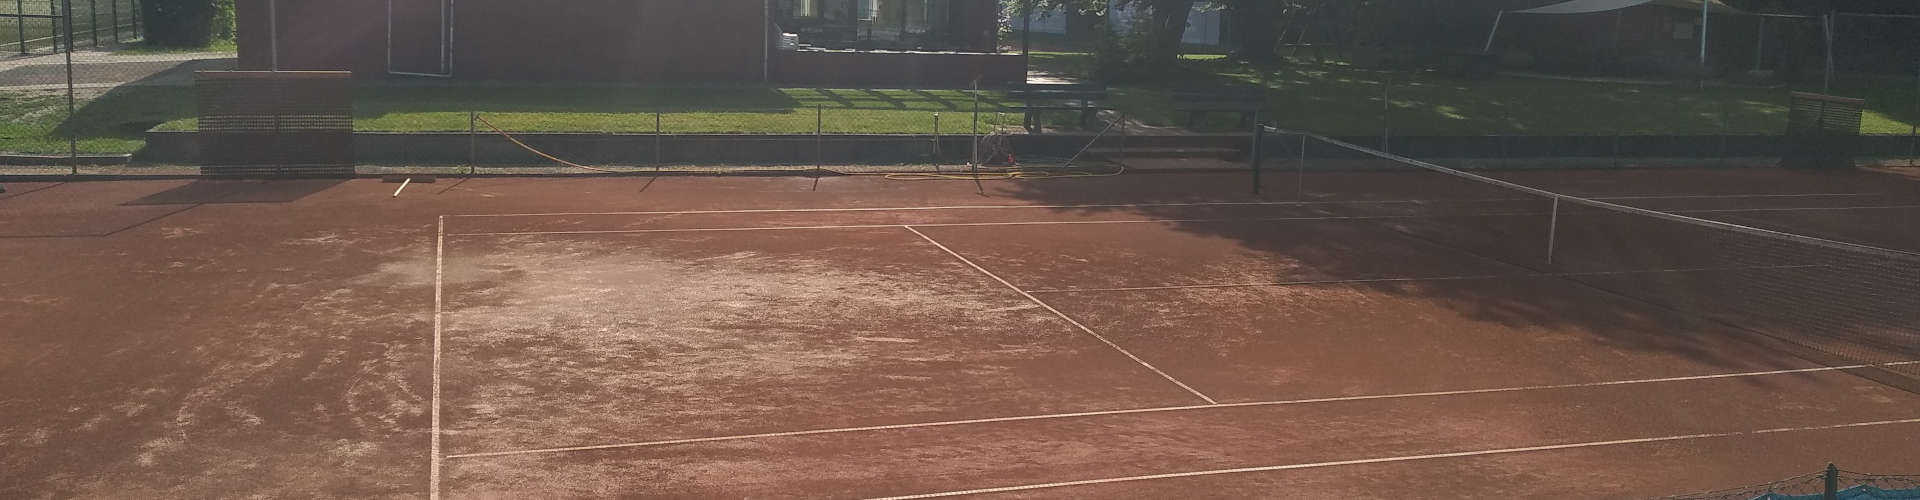 Tennis Anlage Sandplatz Clubhaus